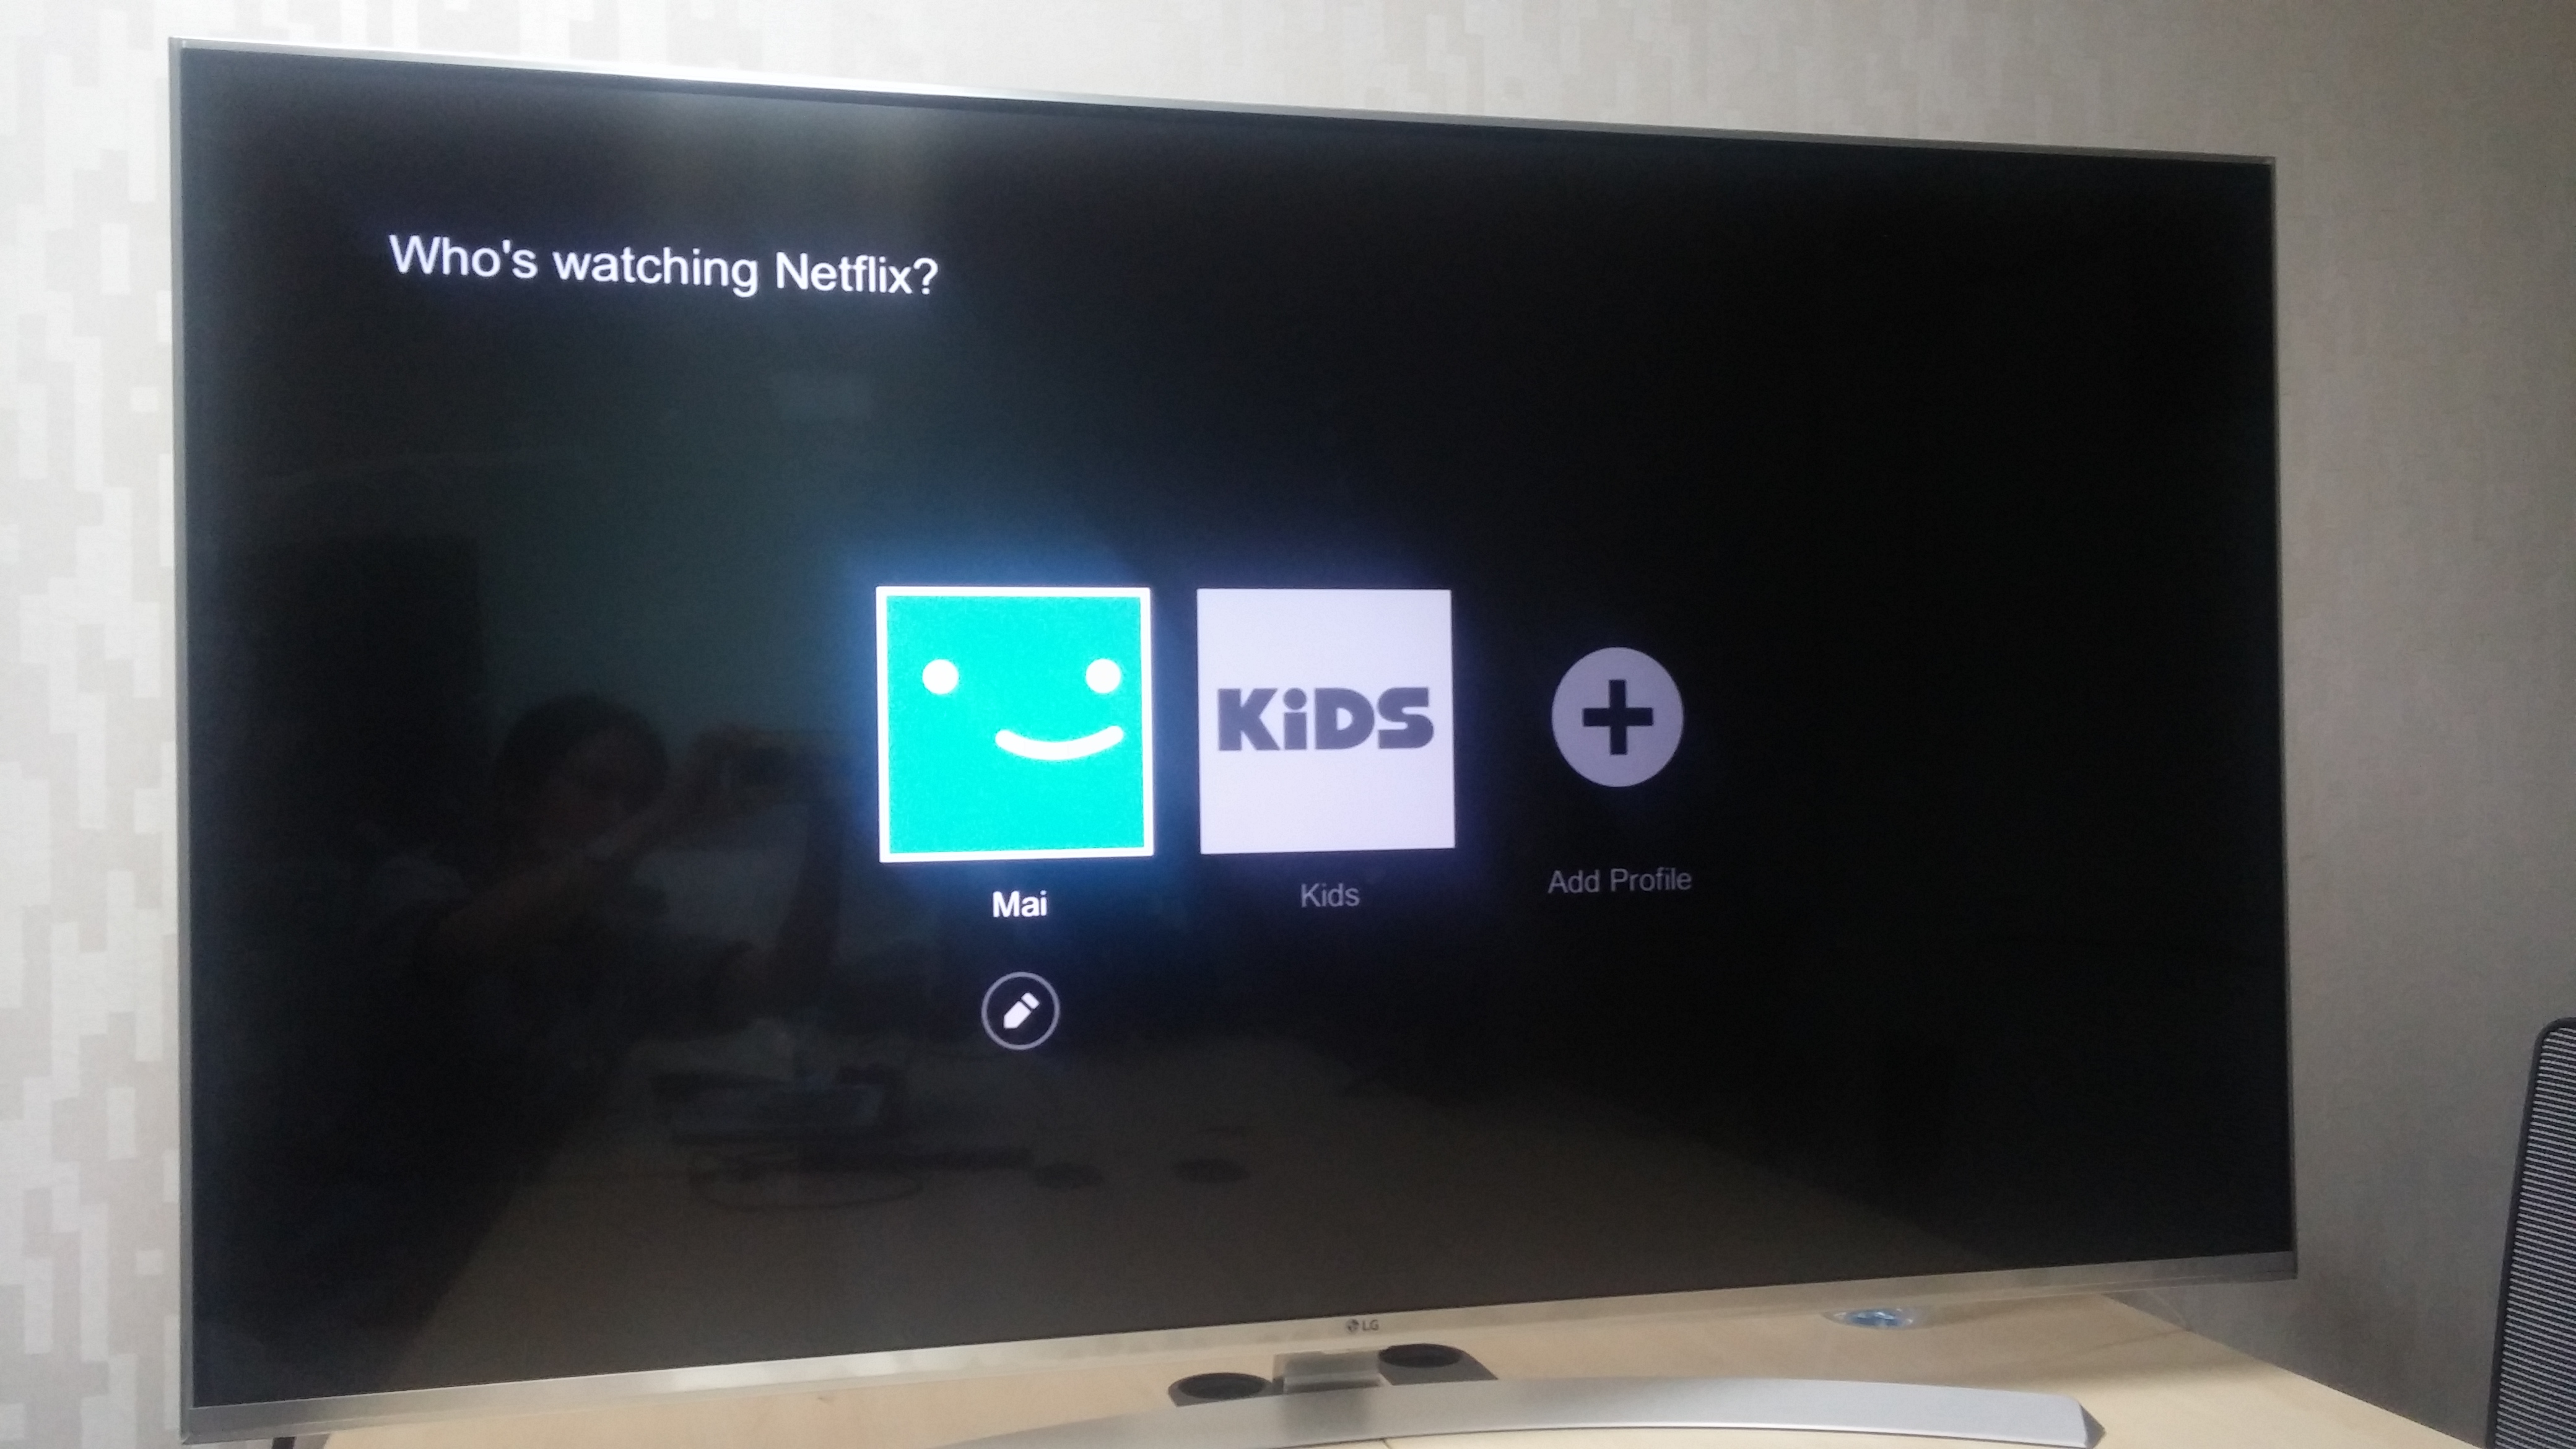 ชม Netflix ผ่าน LG Smart TV